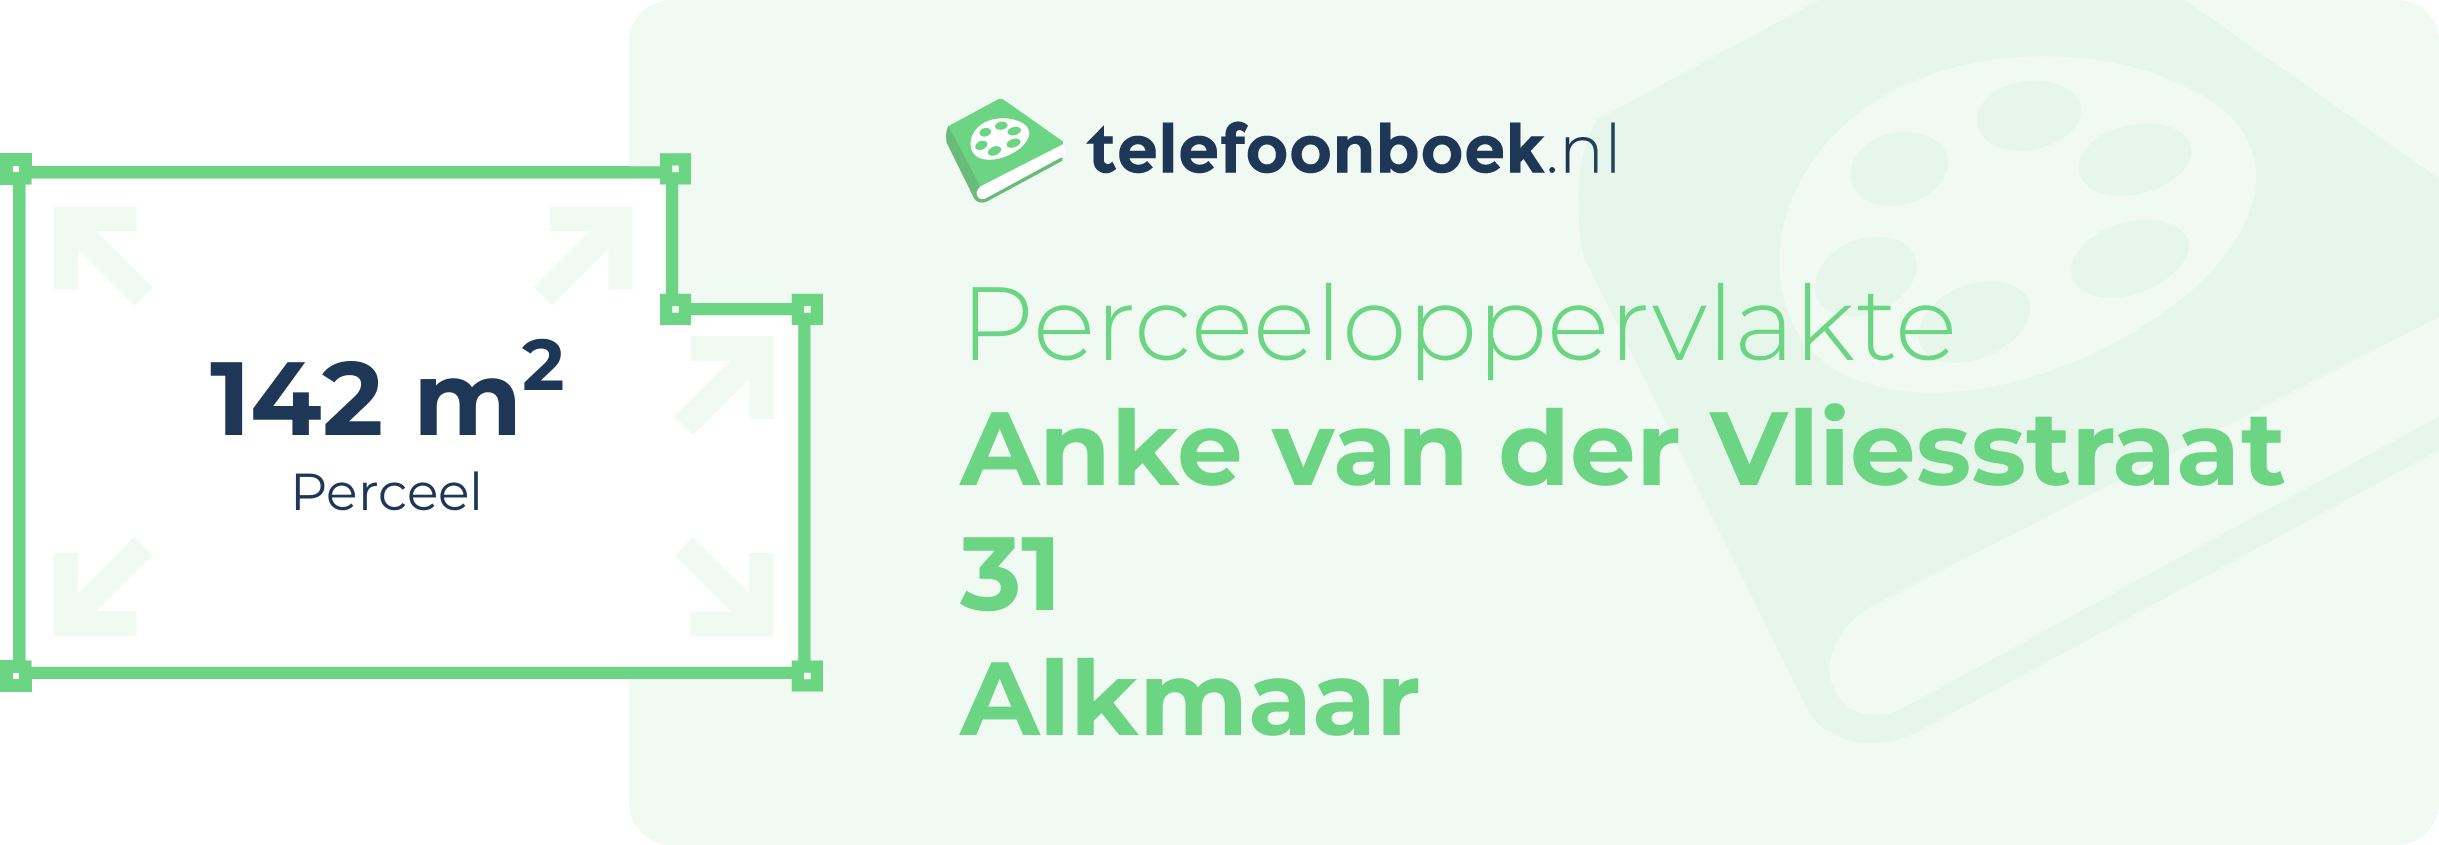 Perceeloppervlakte Anke Van Der Vliesstraat 31 Alkmaar